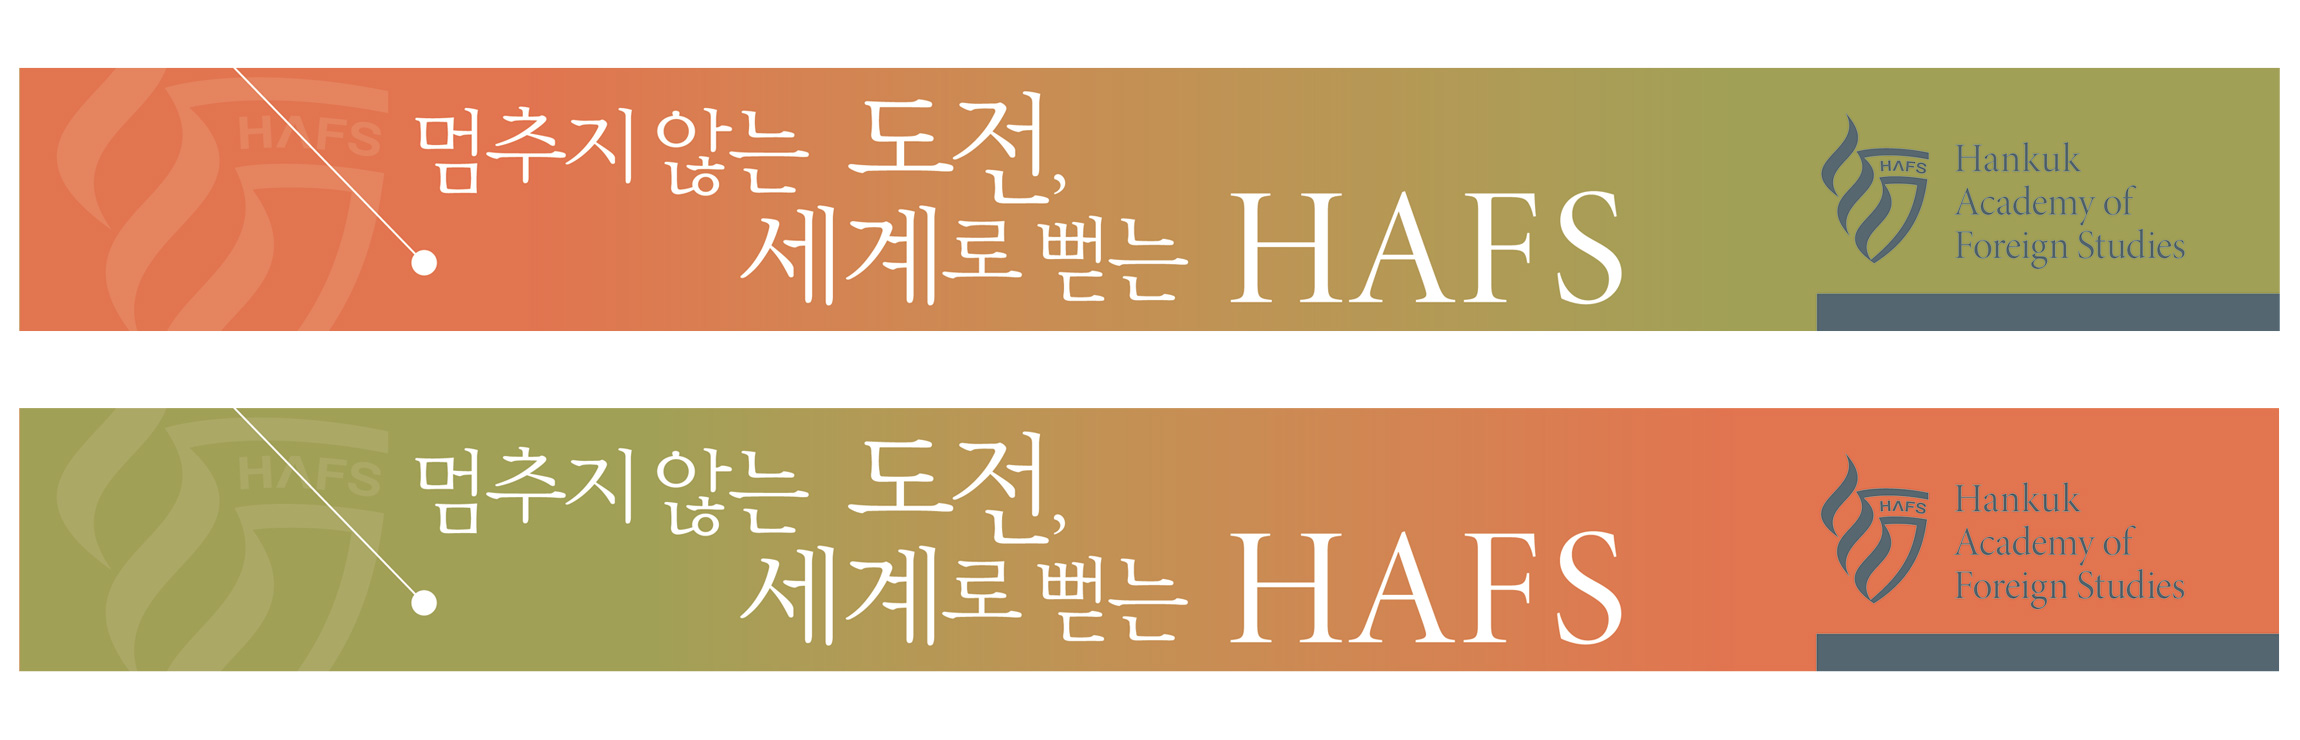 HAFS 용인외국어고등학교 로고, 마크, CI, 브랜드 hafs-placard-1.jpg